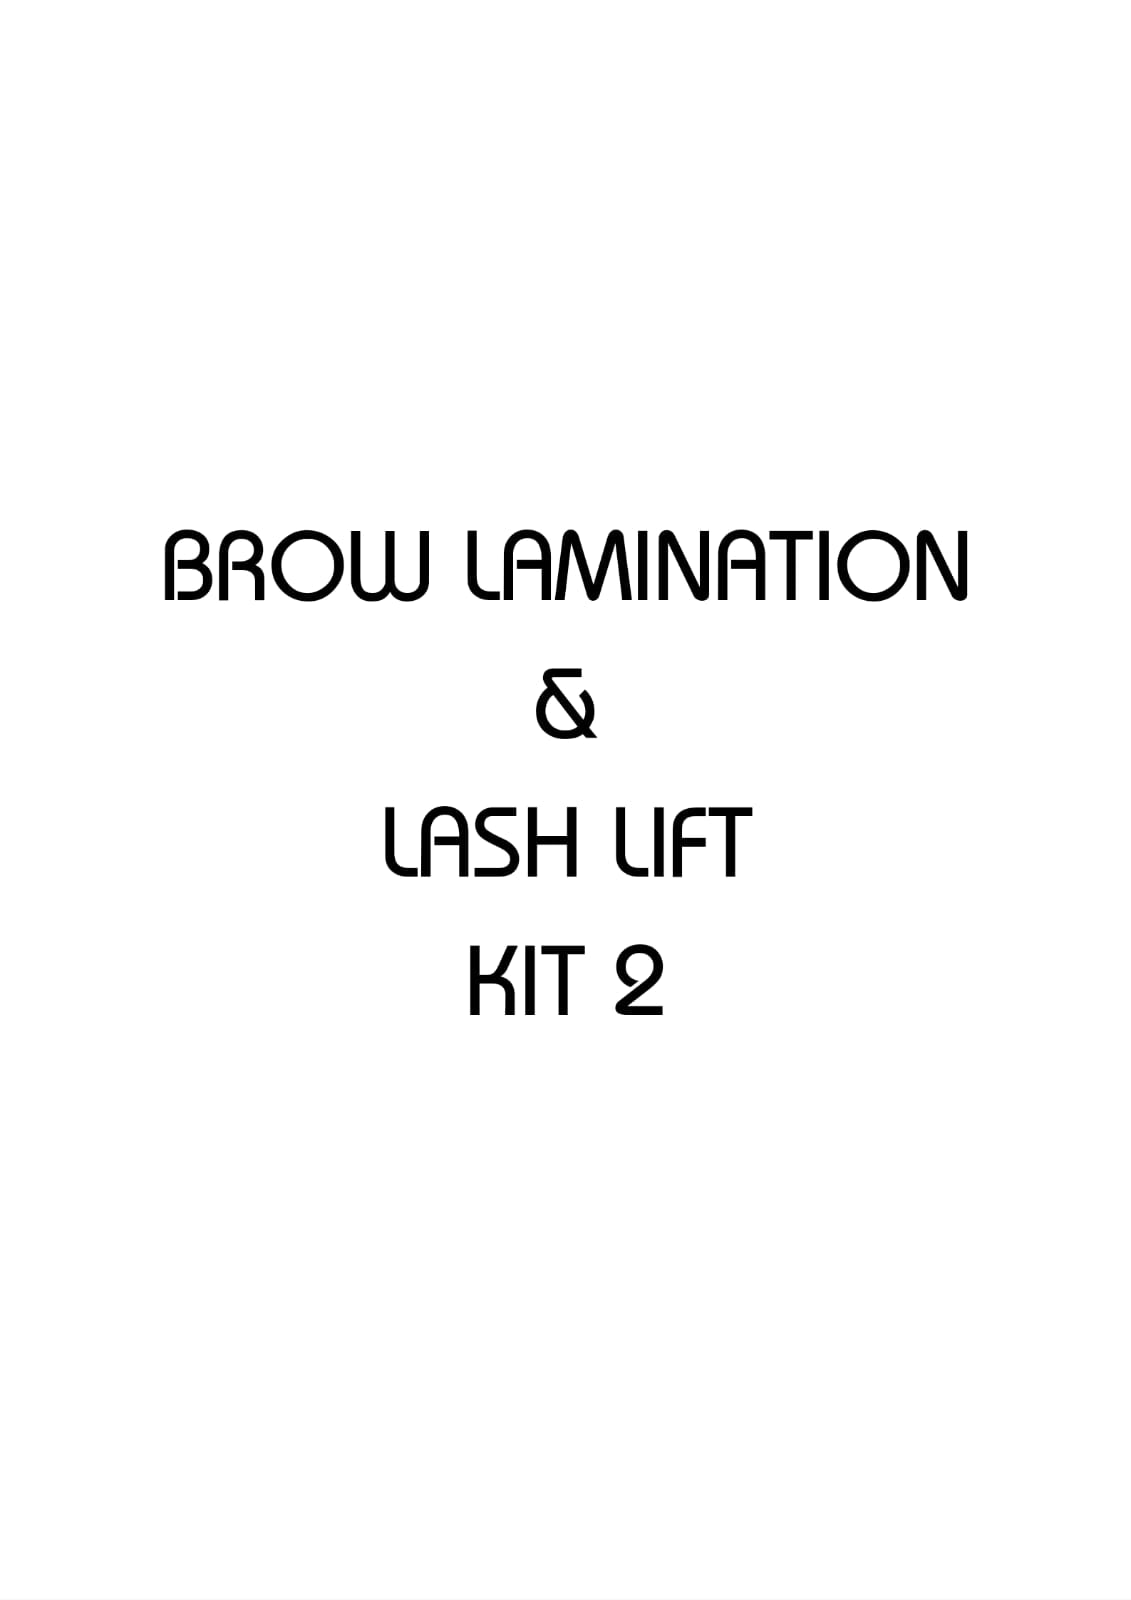 BROW LIFT & LASH LIFT